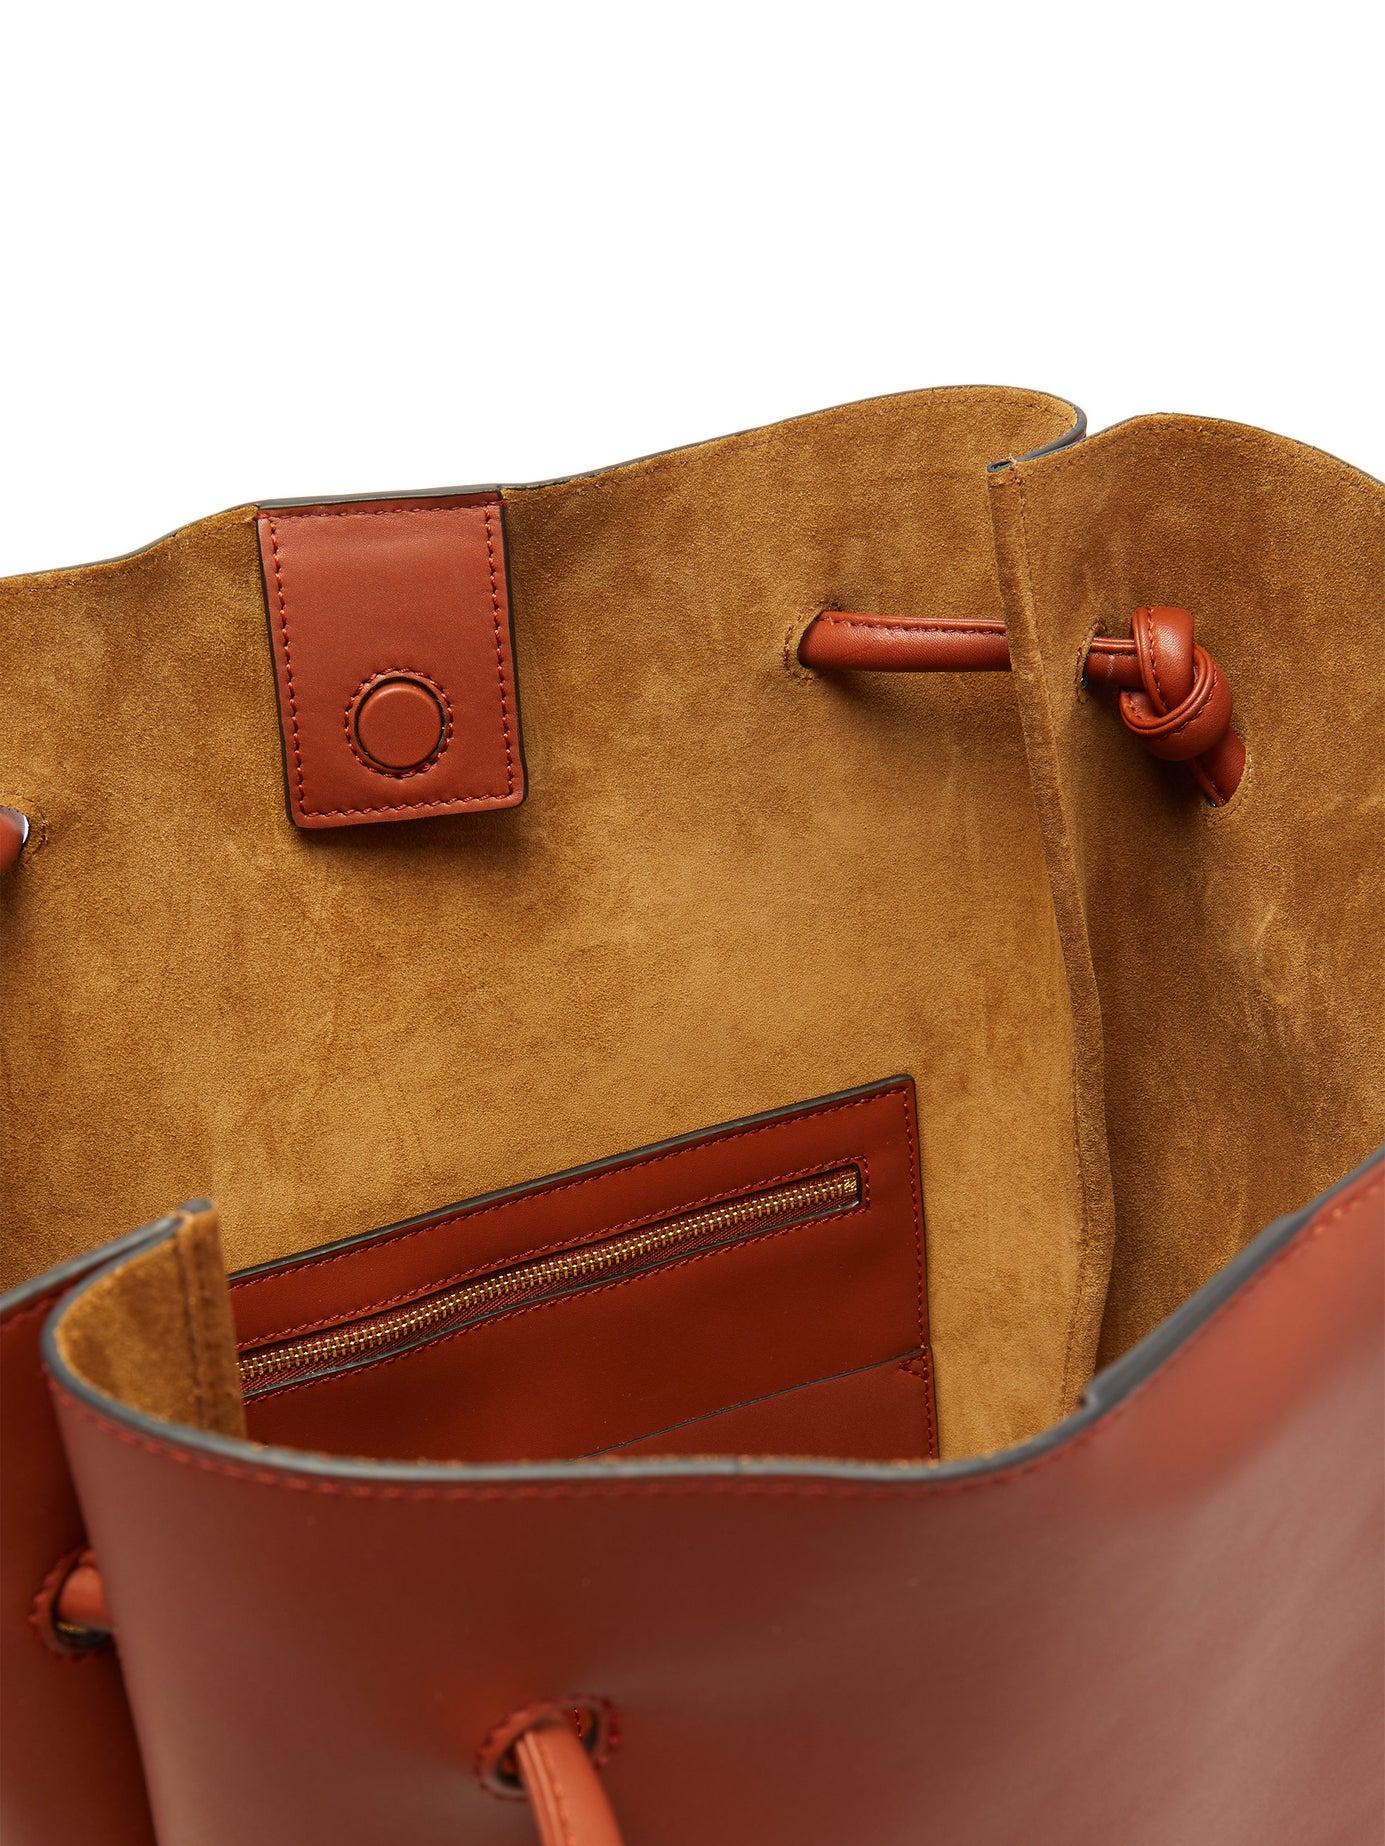 Loewe Flamenco Medium Leather Tote Bag in Rust (Brown) - Save 2% - Lyst